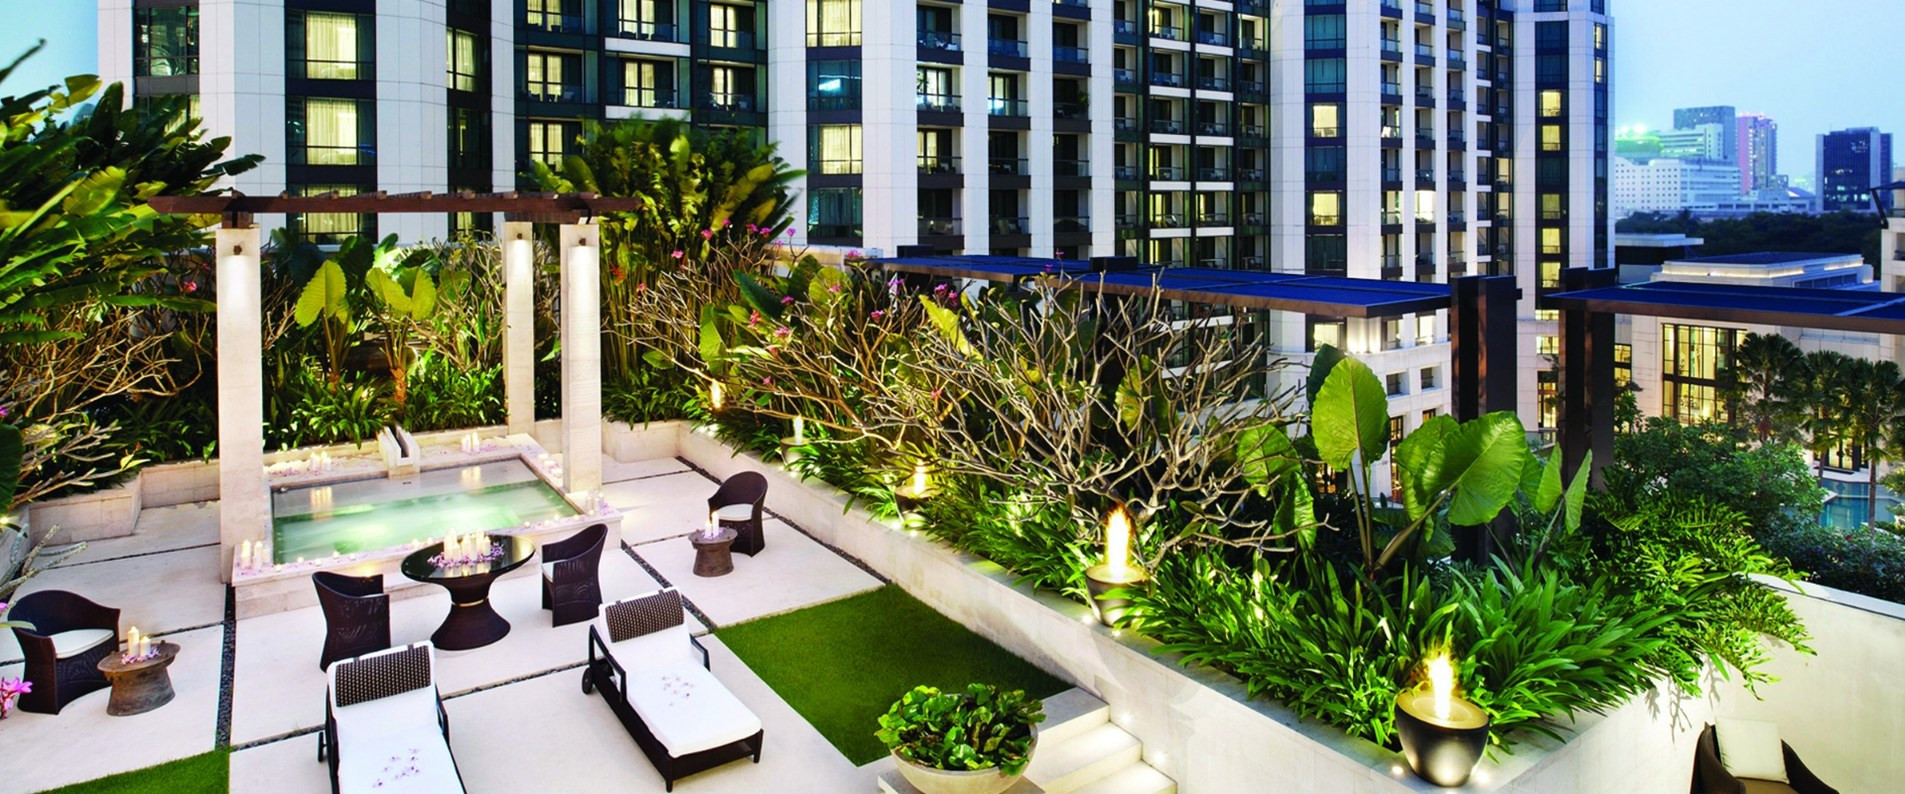 Hotel Terrace Landscape
 Terrace Suite with Jacuzzi & Private Deck